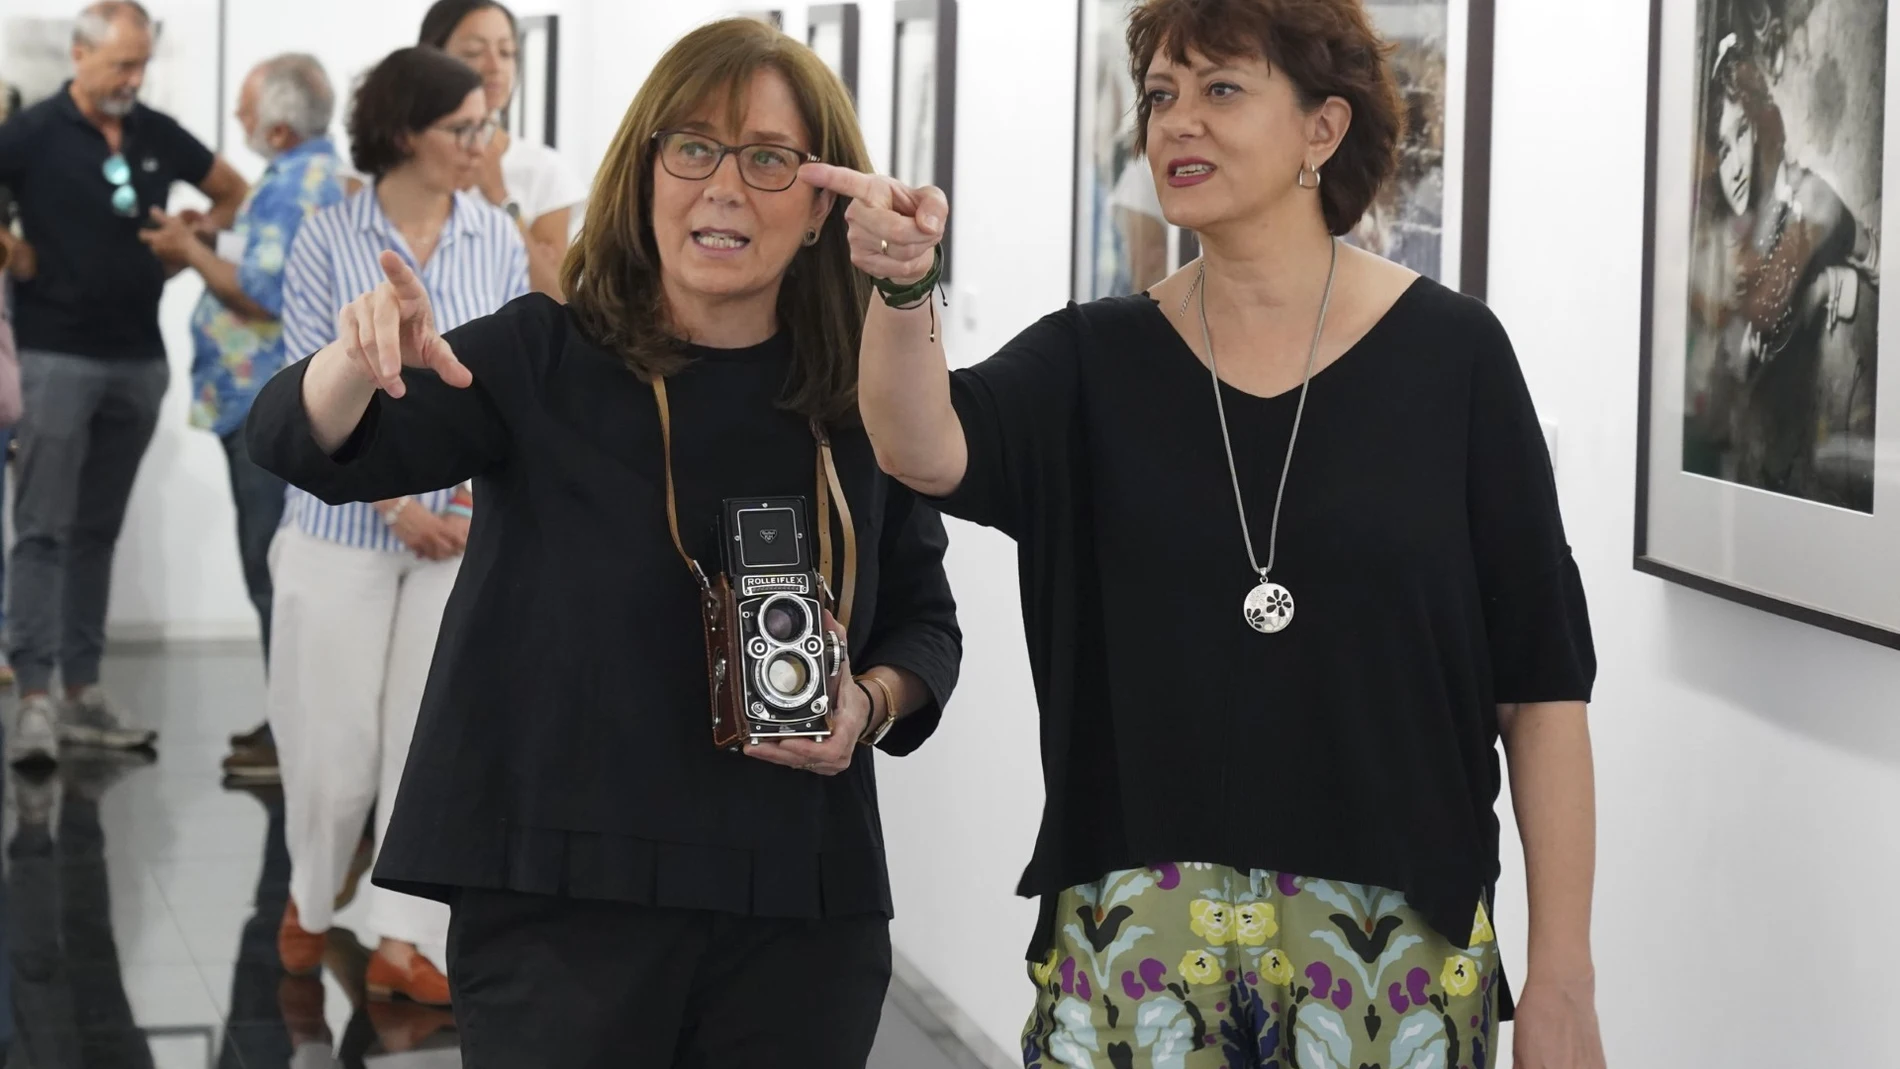 La diputada en funciones del Área de Empleo, Desarrollo Económico, Turismo y Participación, Nuria Duque, inaugura la exposición junto a la fotógrafa Mercedes Vizcaíno de Frías